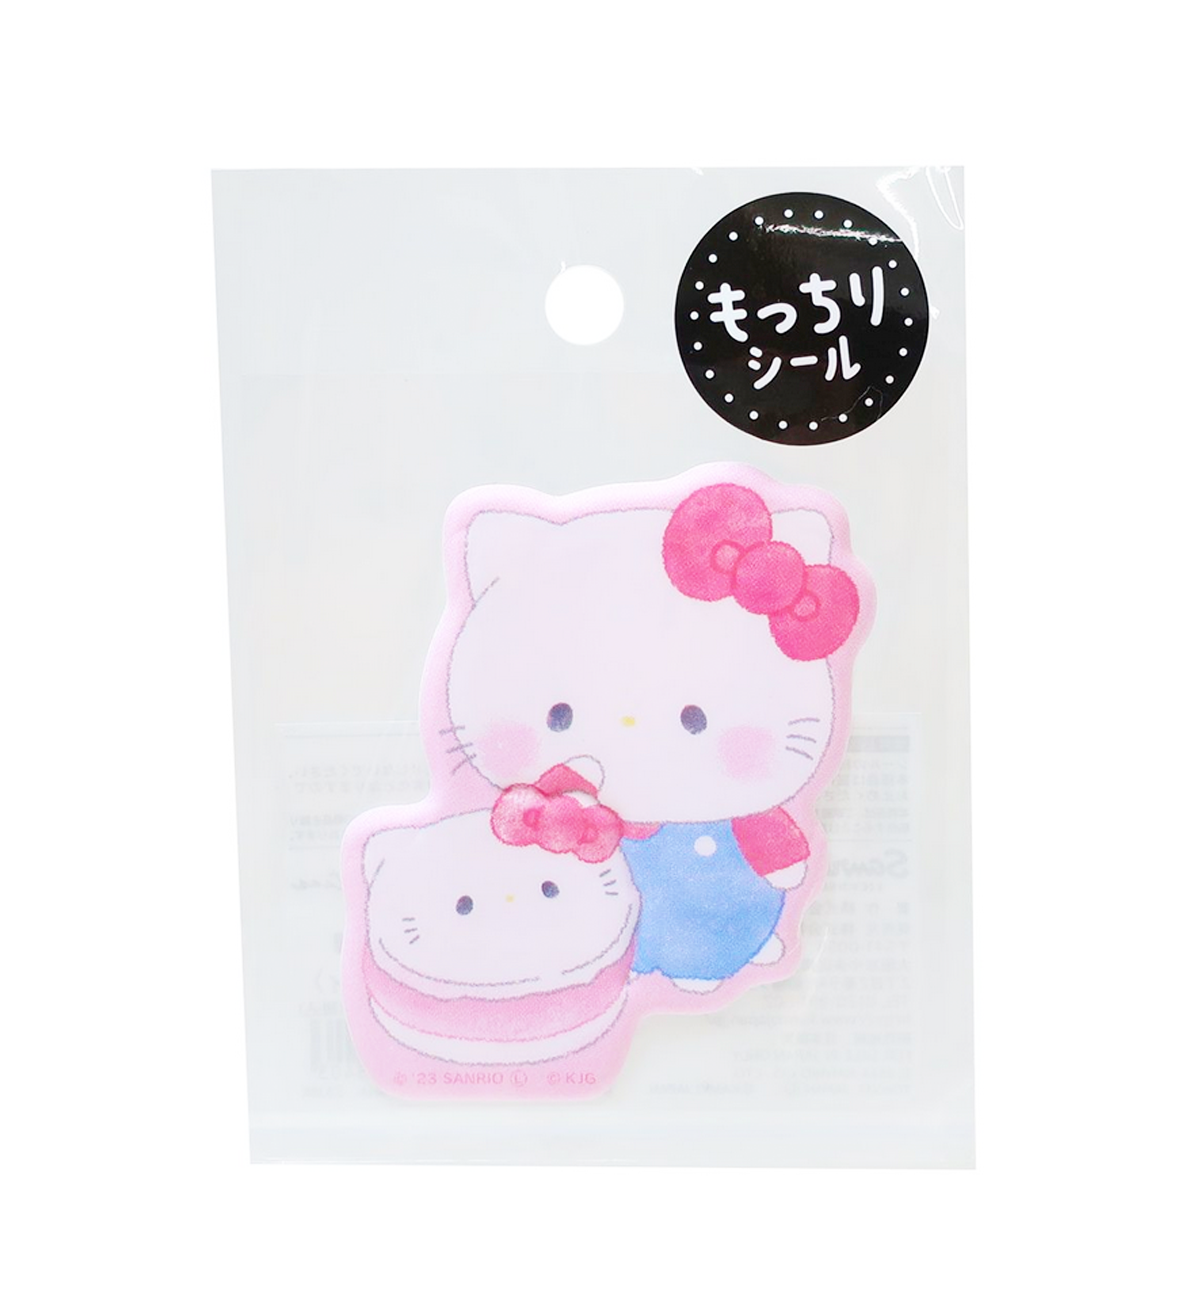 Sanrio Mochimochi Vinyl Sticker [Hello Kitty]